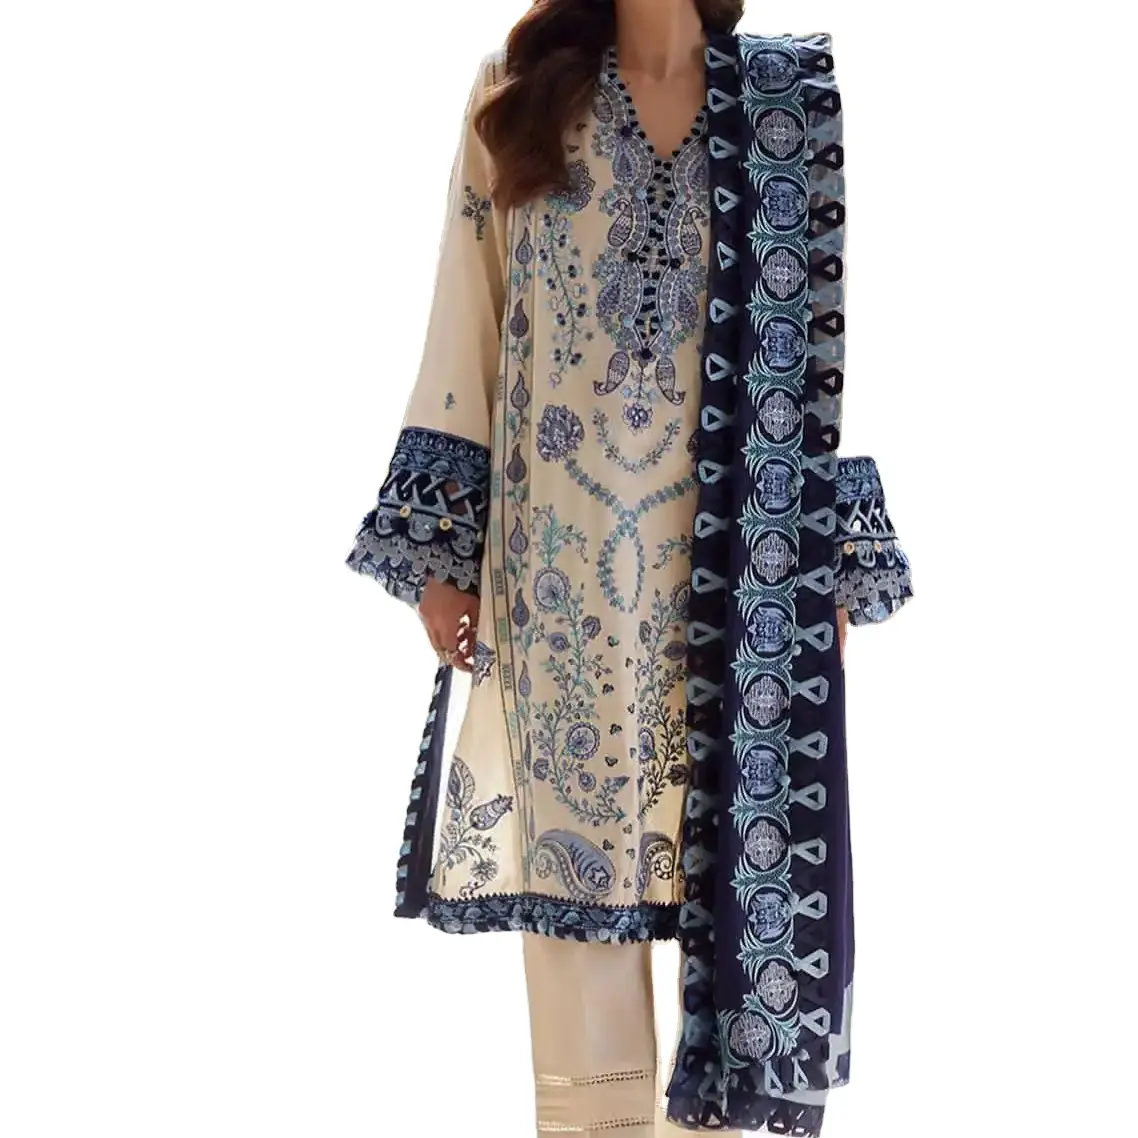 Vestidos indios y paquistaníes de alta calidad. Elegir conjuntos elegantes, hermosos bordados, perfectos para eventos.